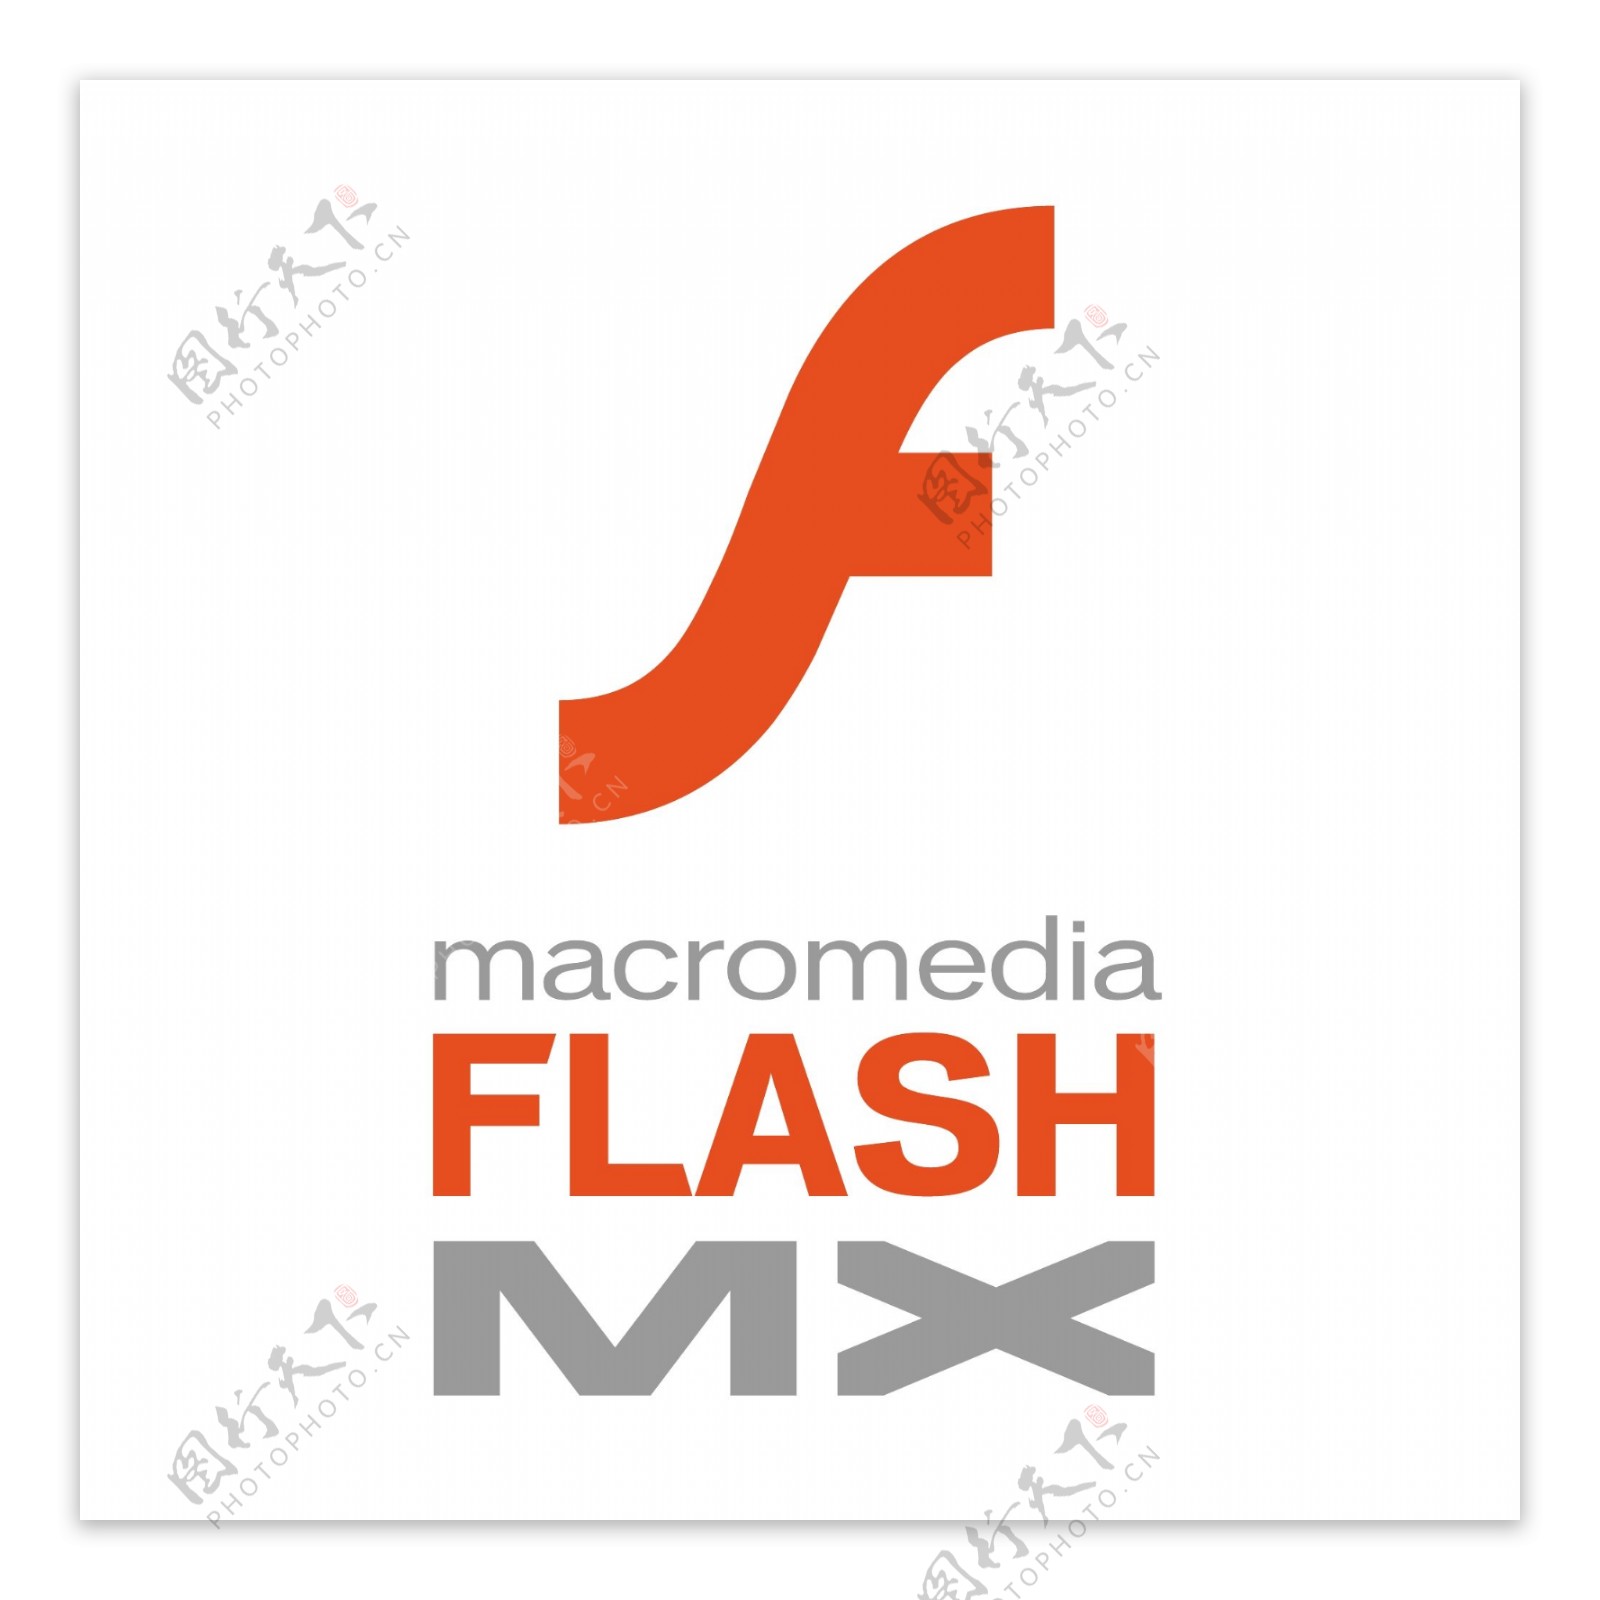 MacromediaFlashMX